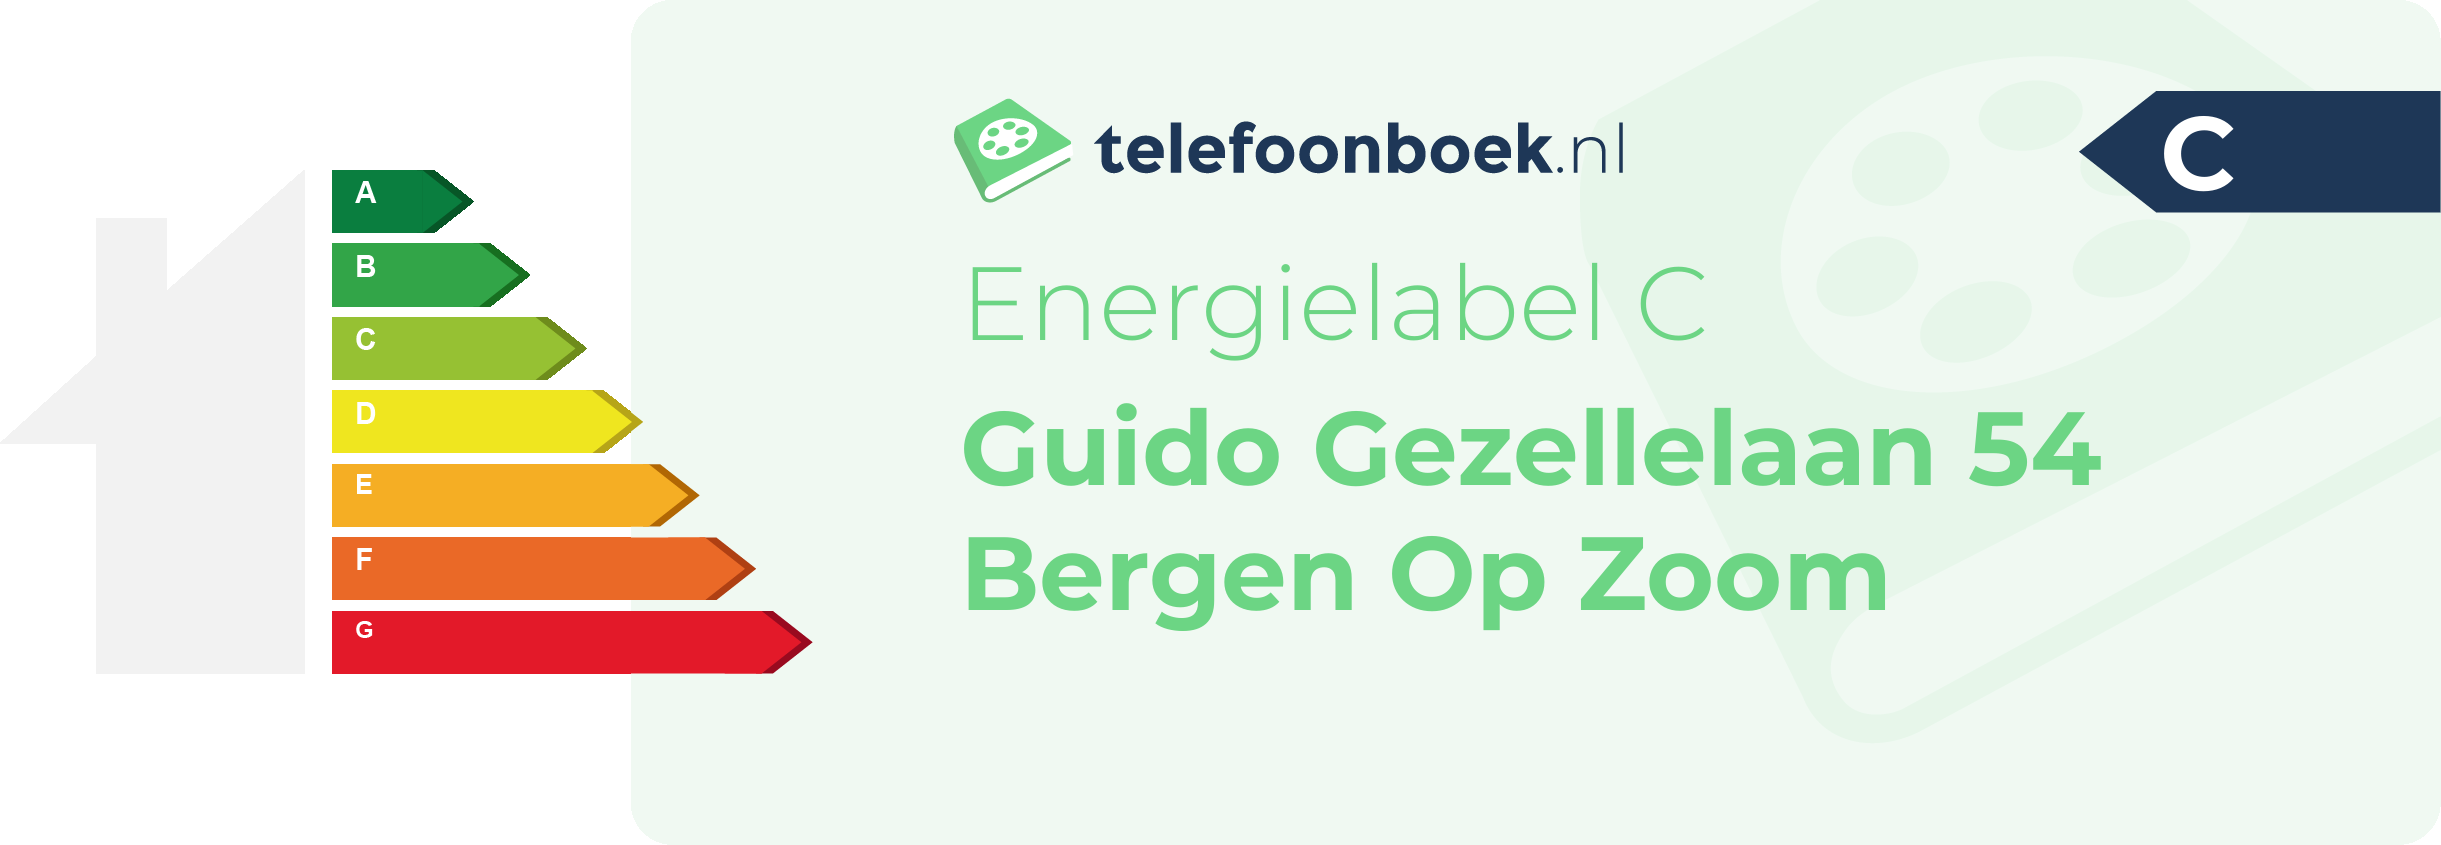 Energielabel Guido Gezellelaan 54 Bergen Op Zoom